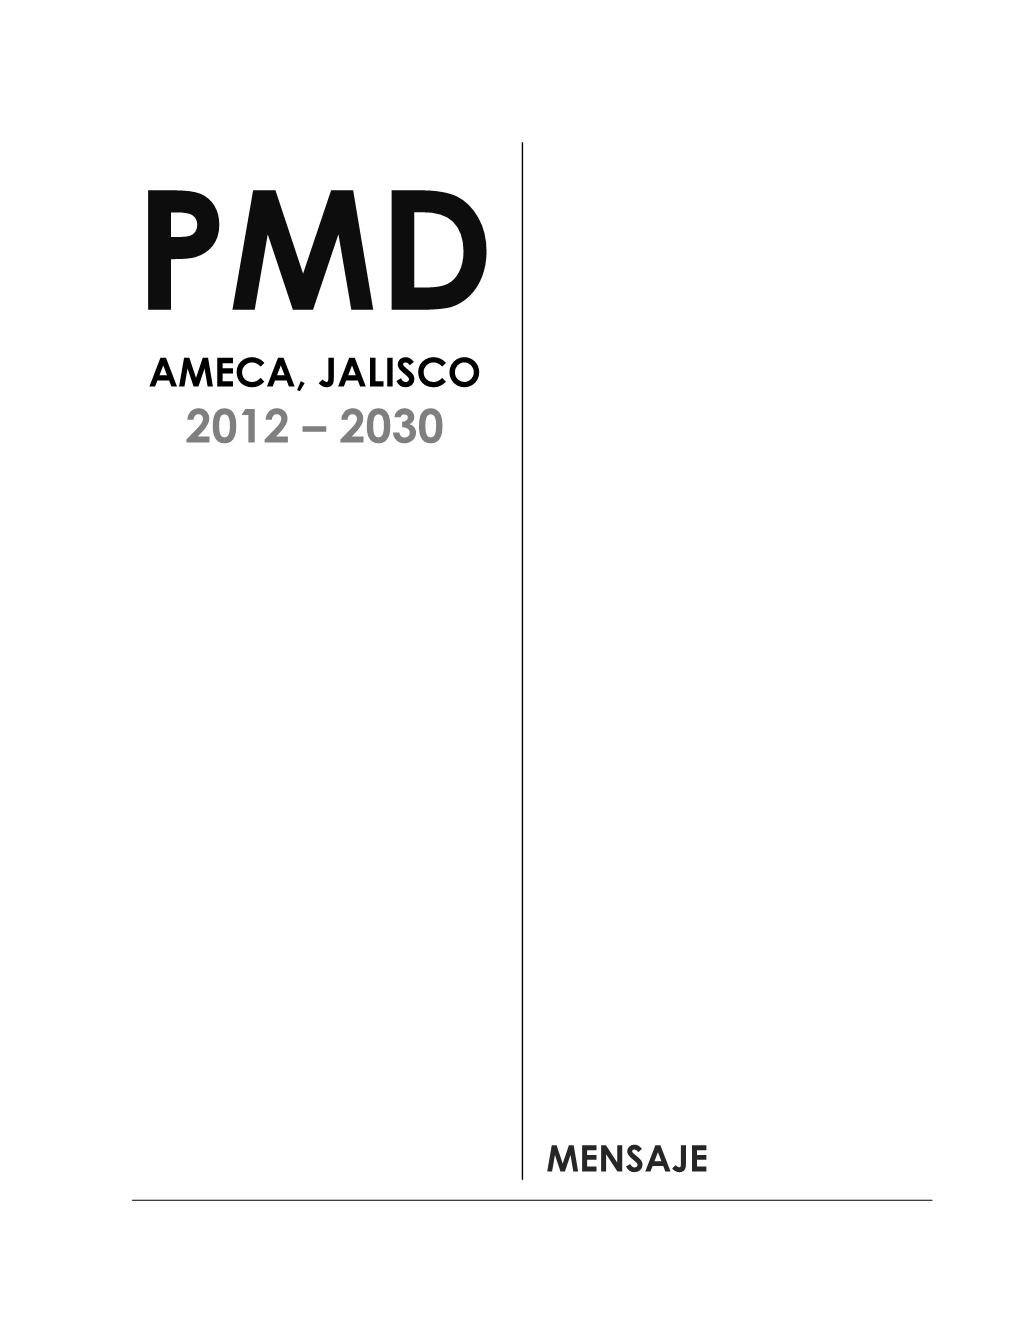 Plan Municipal De Desarrollo 2012-2030